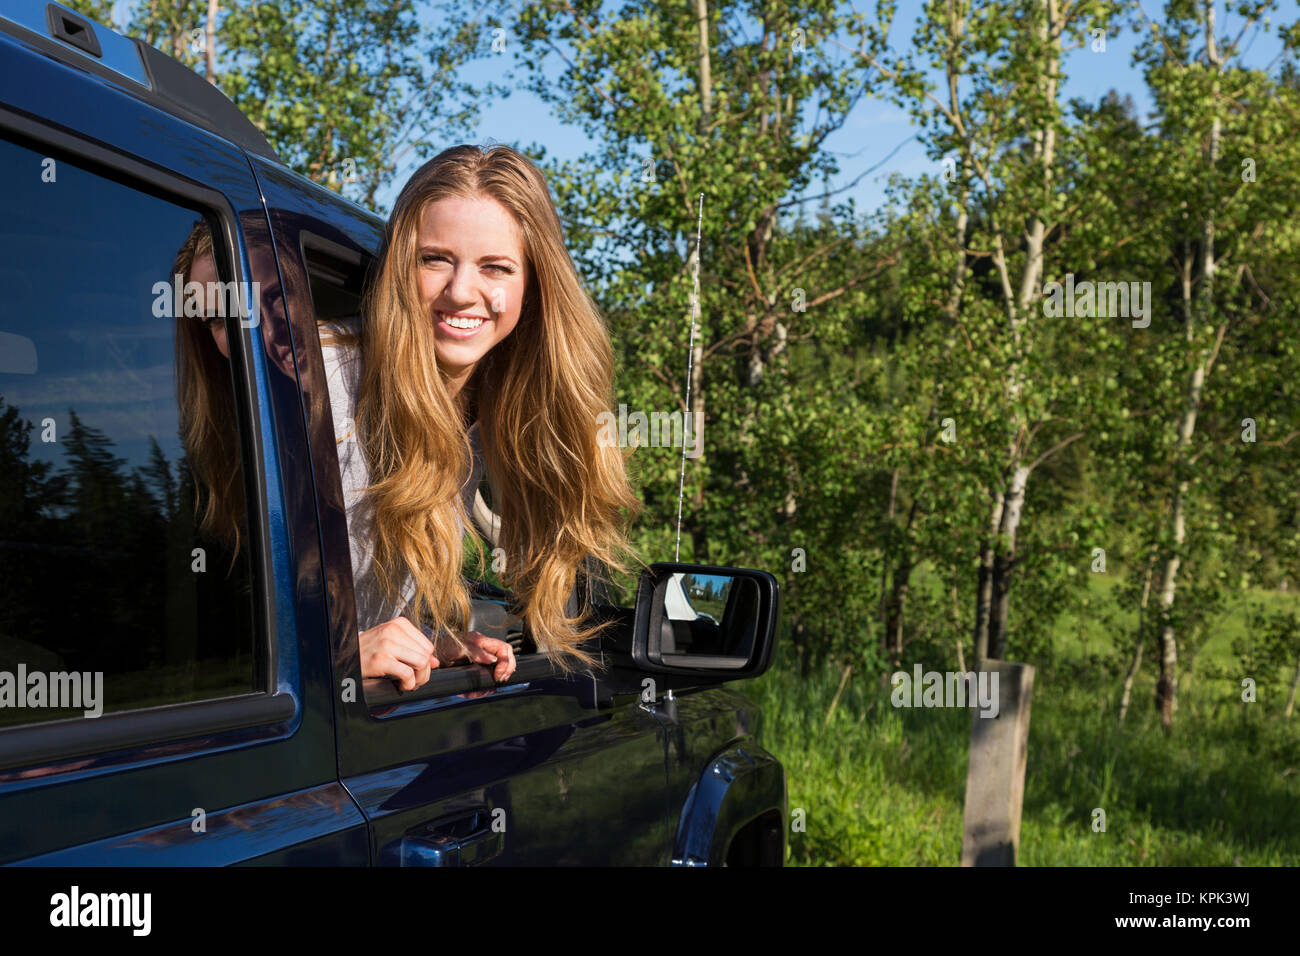 Eine schöne junge Frau mit langen blonden Haaren, die auf der Suche nach einem Fahrzeug Fenster und für die Kamera posieren; Edmonton, Alberta, Kanada Stockfoto